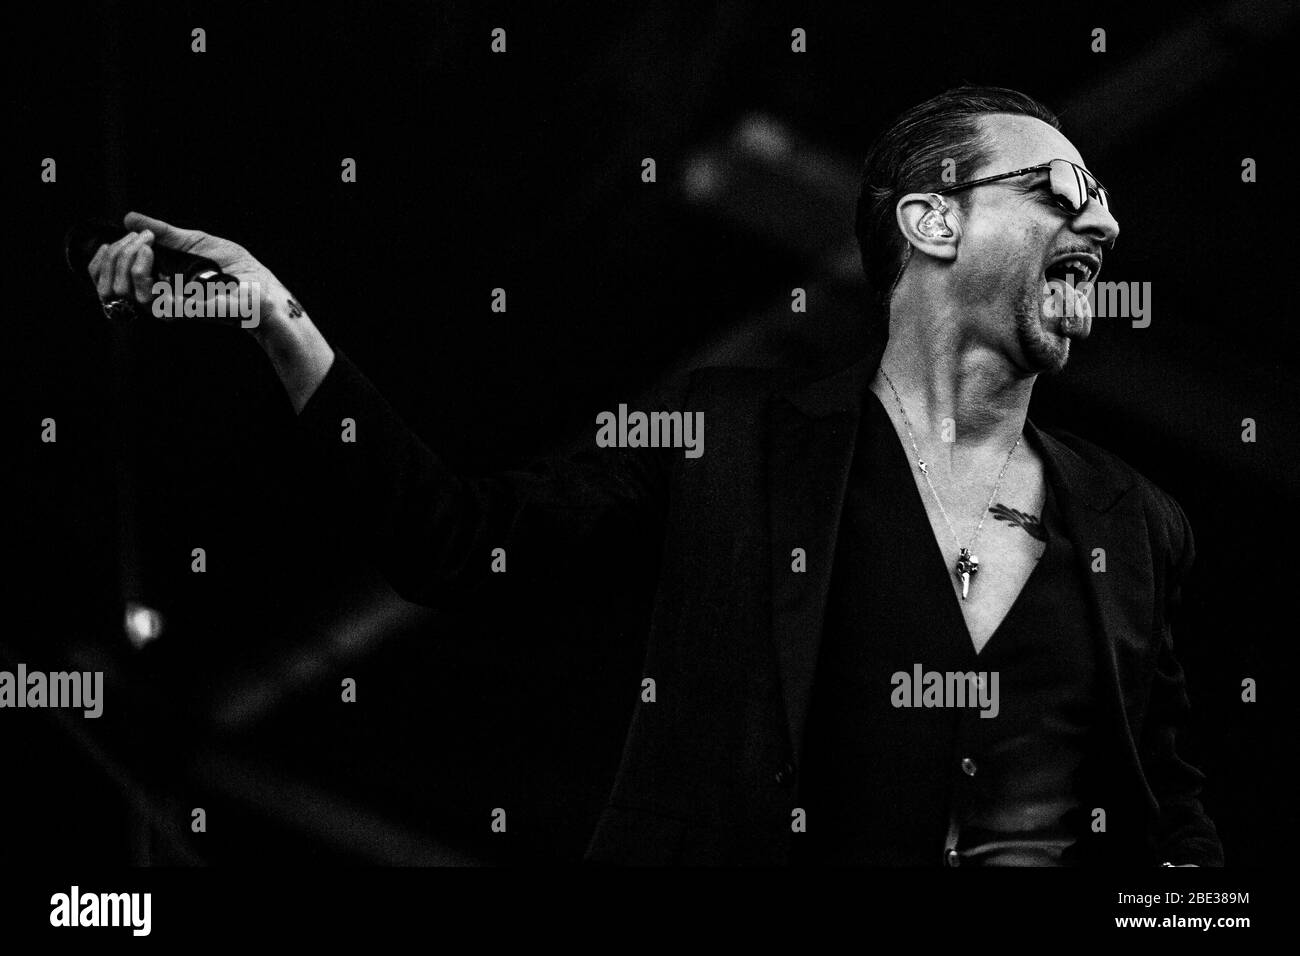 Odense, Danemark. 28 juin 2018. Le groupe anglais Depeche mode organise un concert en direct lors du festival de musique danois Tinderbox 2018 à Odense. Ici, le chanteur et compositeur Dave Gahan est vu en direct sur scène. (Crédit photo: Gonzales photo - Lasse Lagoni). Banque D'Images